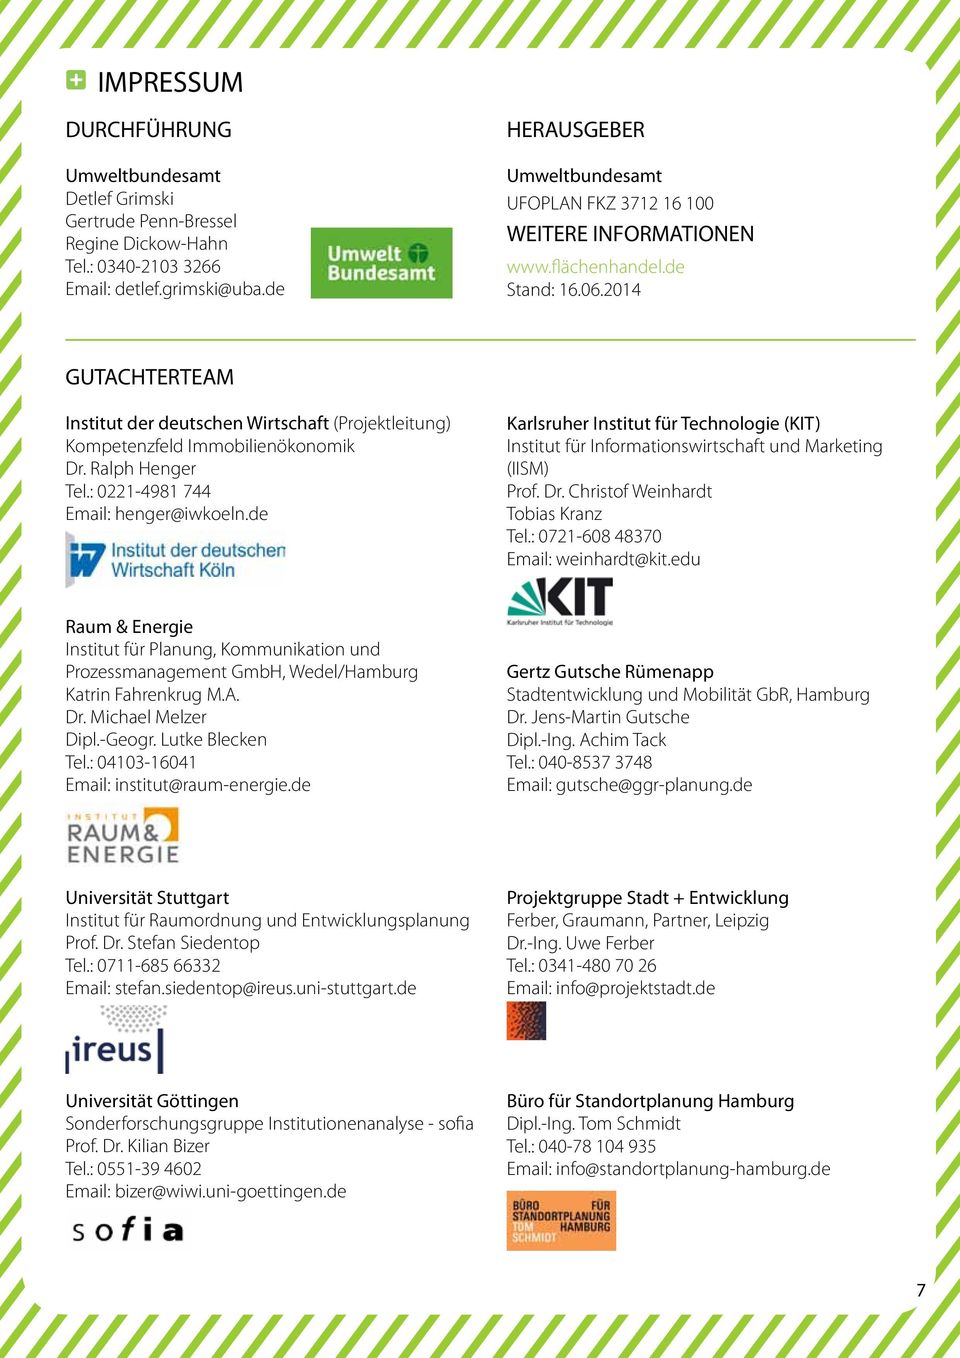 2014 GUTACHTERTEAM Institut der deutschen Wirtschaft (Projektleitung) Kompetenzfeld Immobilienökonomik Dr. Ralph Henger Tel.: 0221-4981 744 Email: henger@iwkoeln.